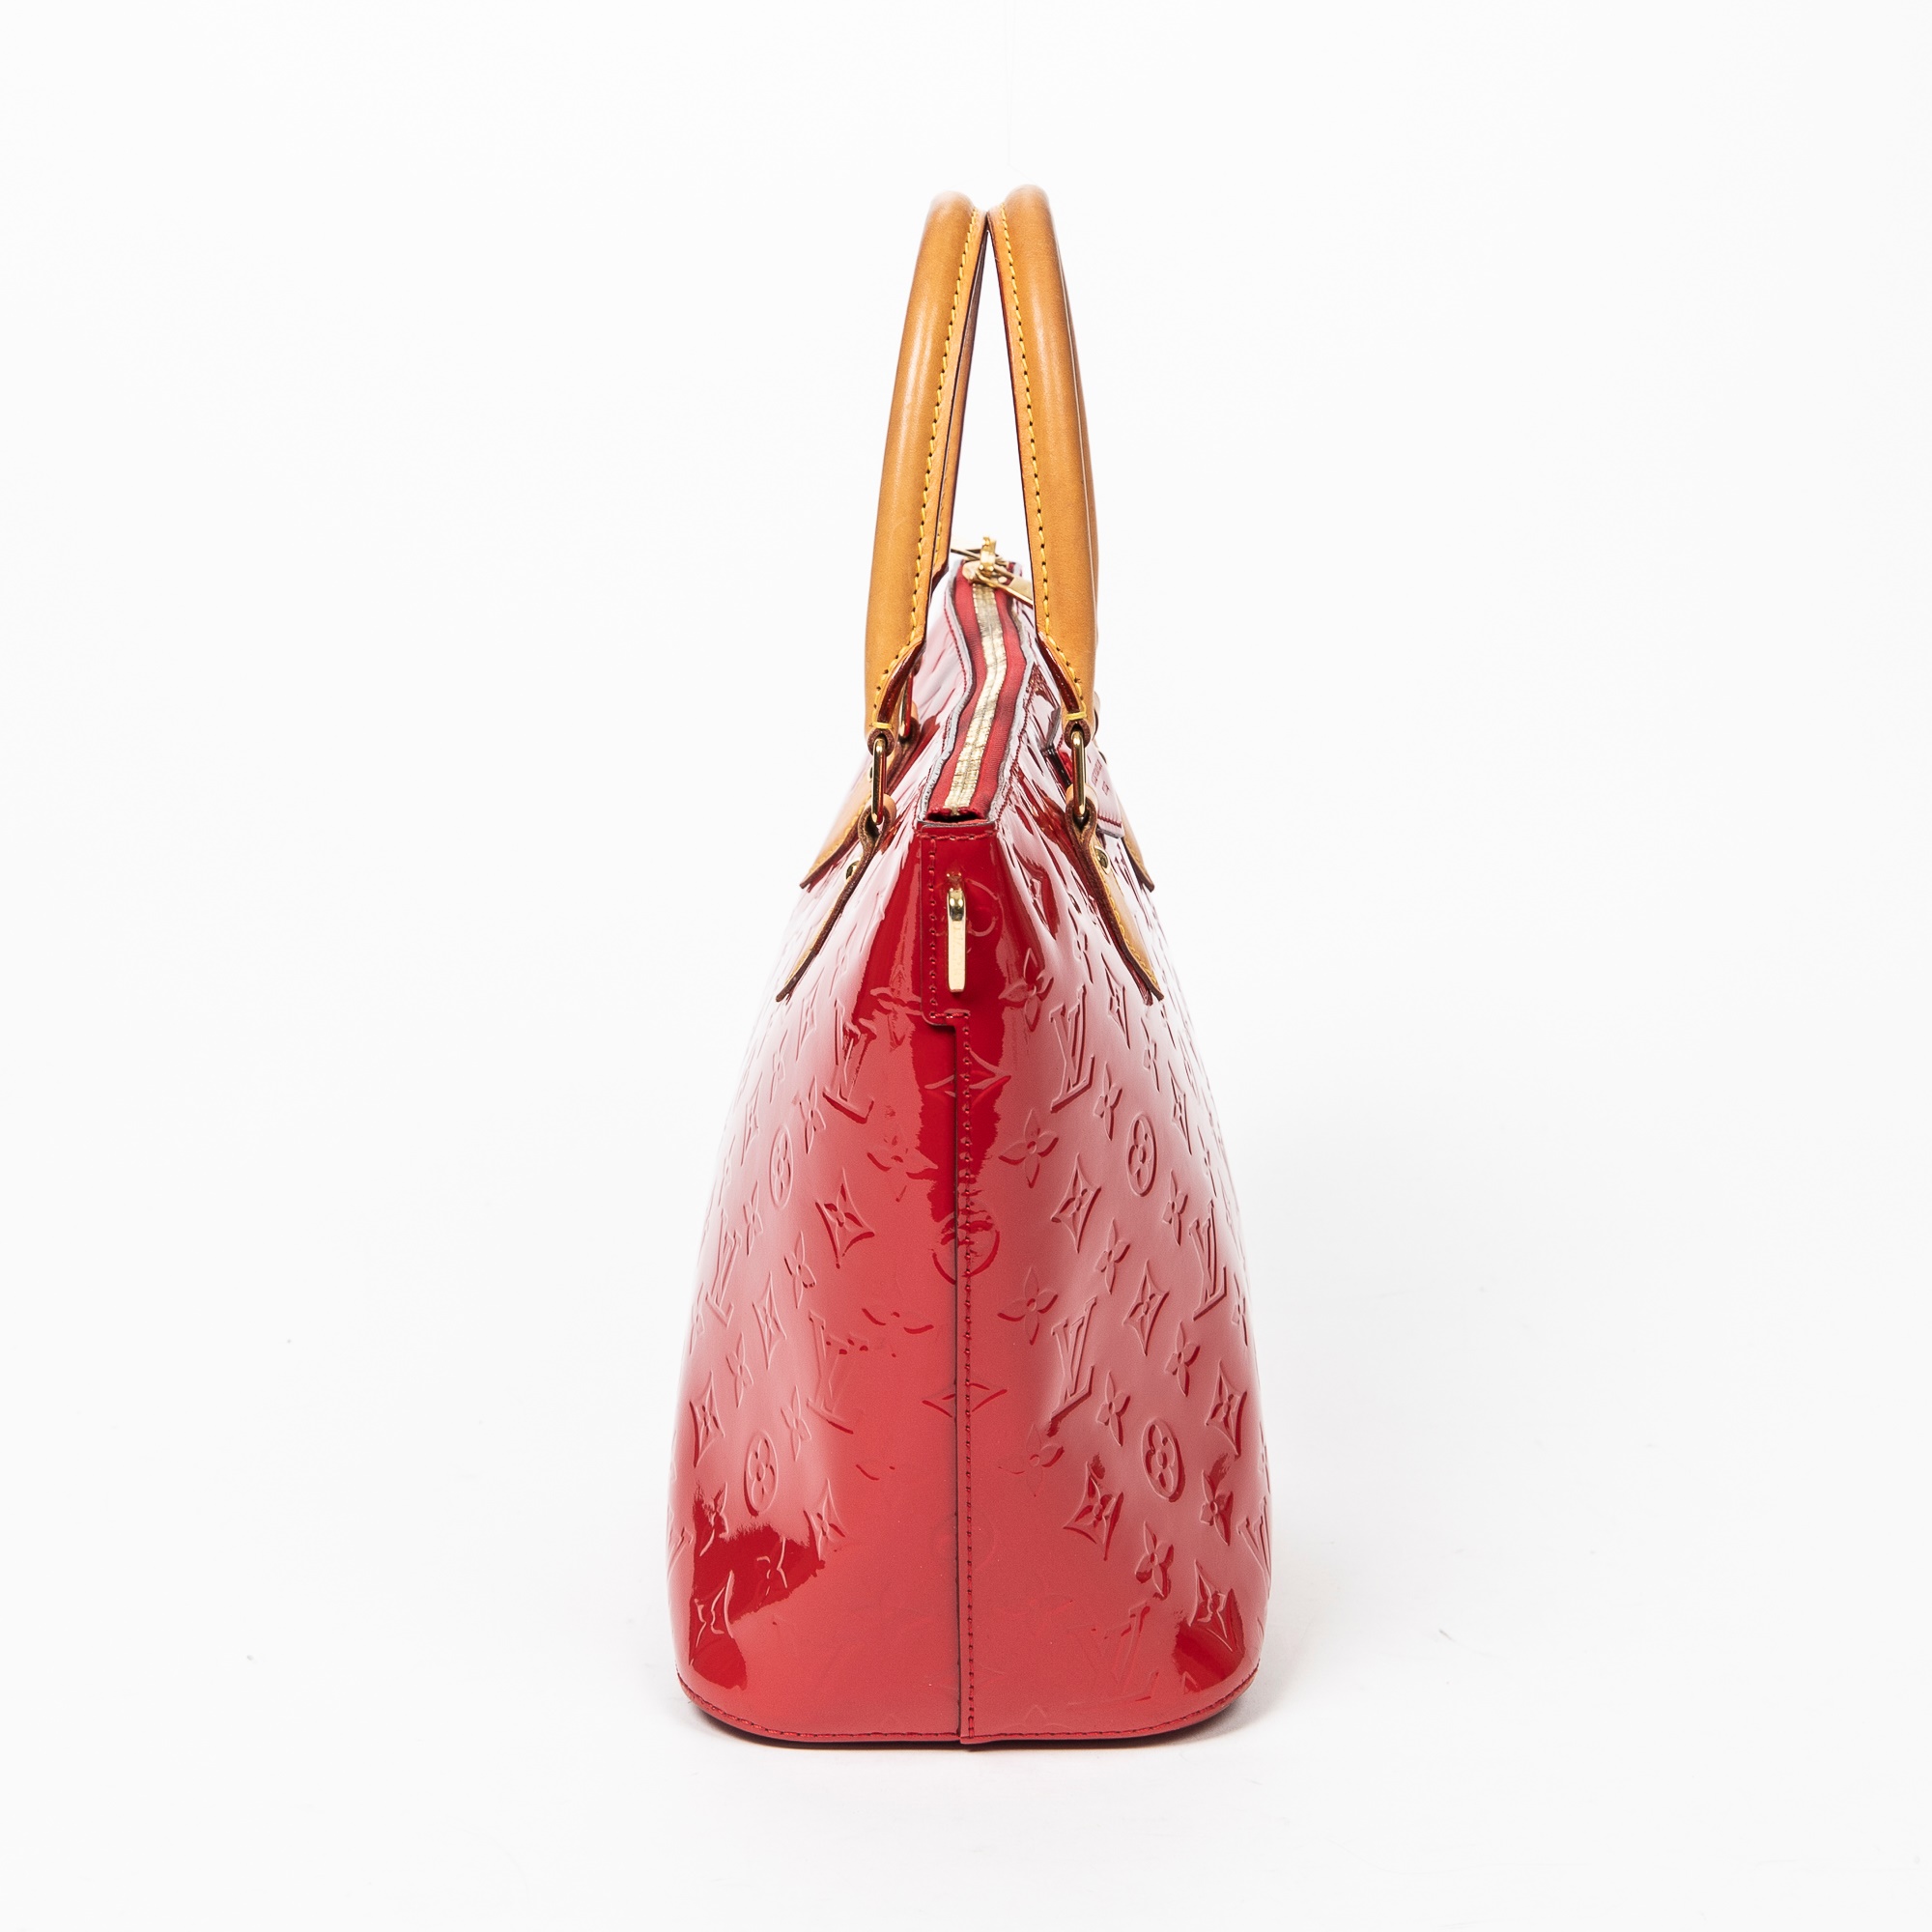 At Auction: Louis Vuitton, LOUIS VUITTON MONO VERNIS BELLEVUE RED HANDBAG